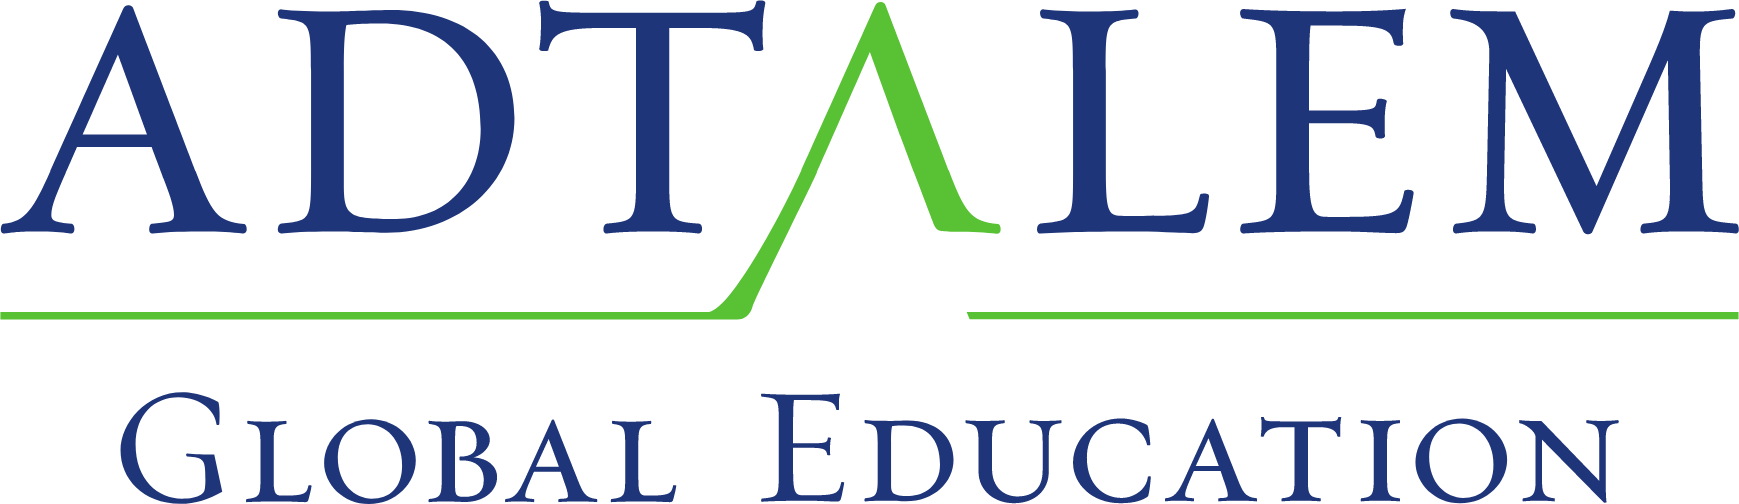 Adtalem Global Education
 logo large (transparent PNG)